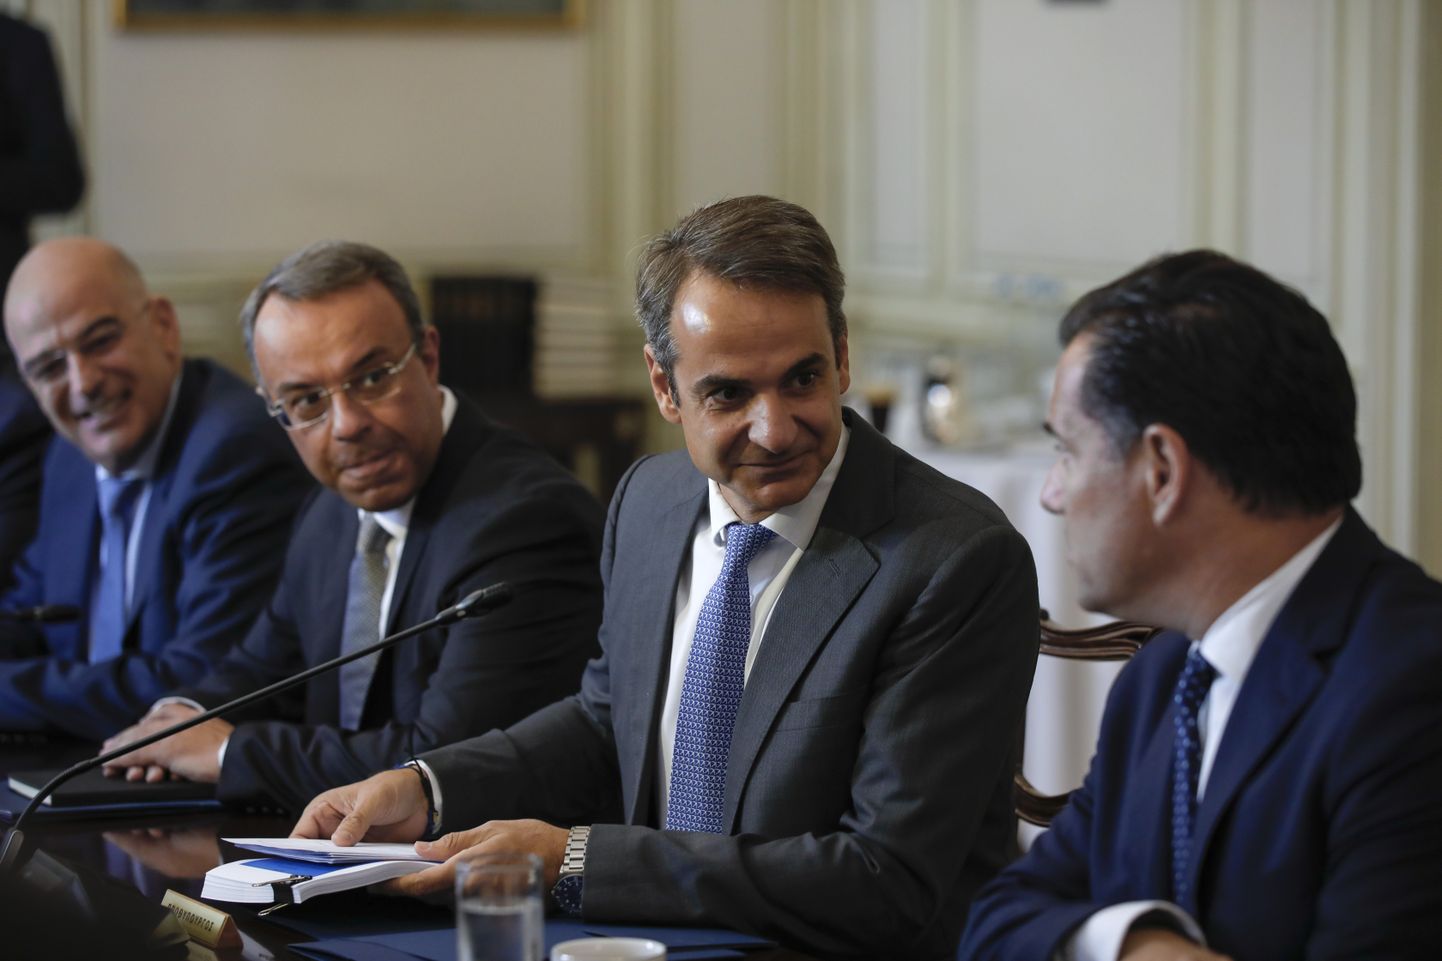 Kreeka peaminister Kyriákos Mitsotákis (paremalt teine) esmaspäeval riigi rändepoliitika arutamiseks kokku kutsutud valitsuse istungil Ateenas.